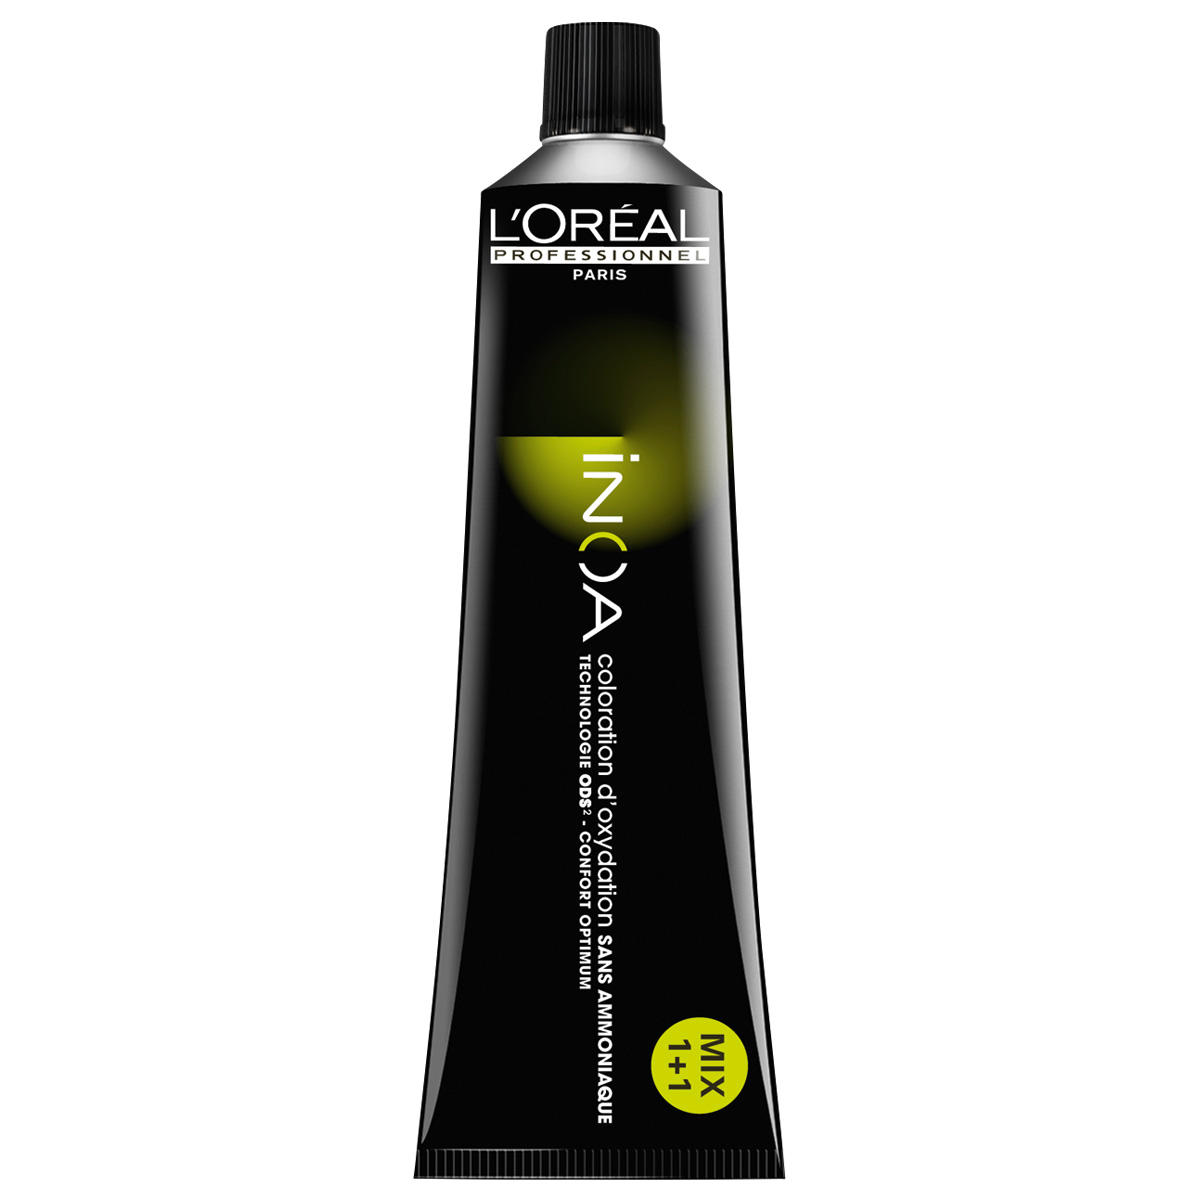 L'Oréal Professionnel Paris Coloration 5.25 Marrone chiaro Irisé Mogano, tubo 60 ml